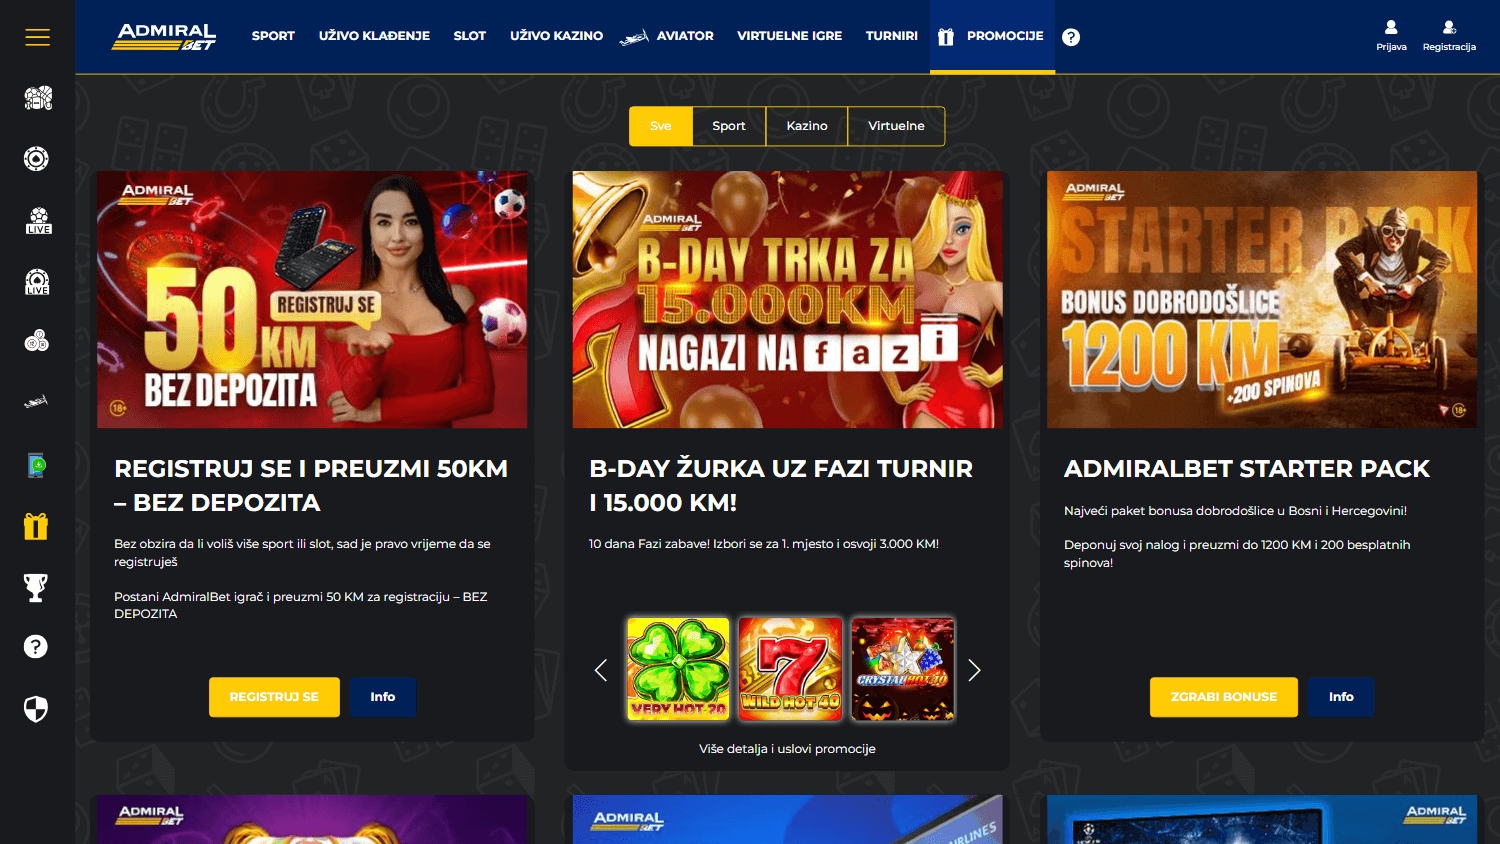 admiralbet_casino_ba_promotions_desktop